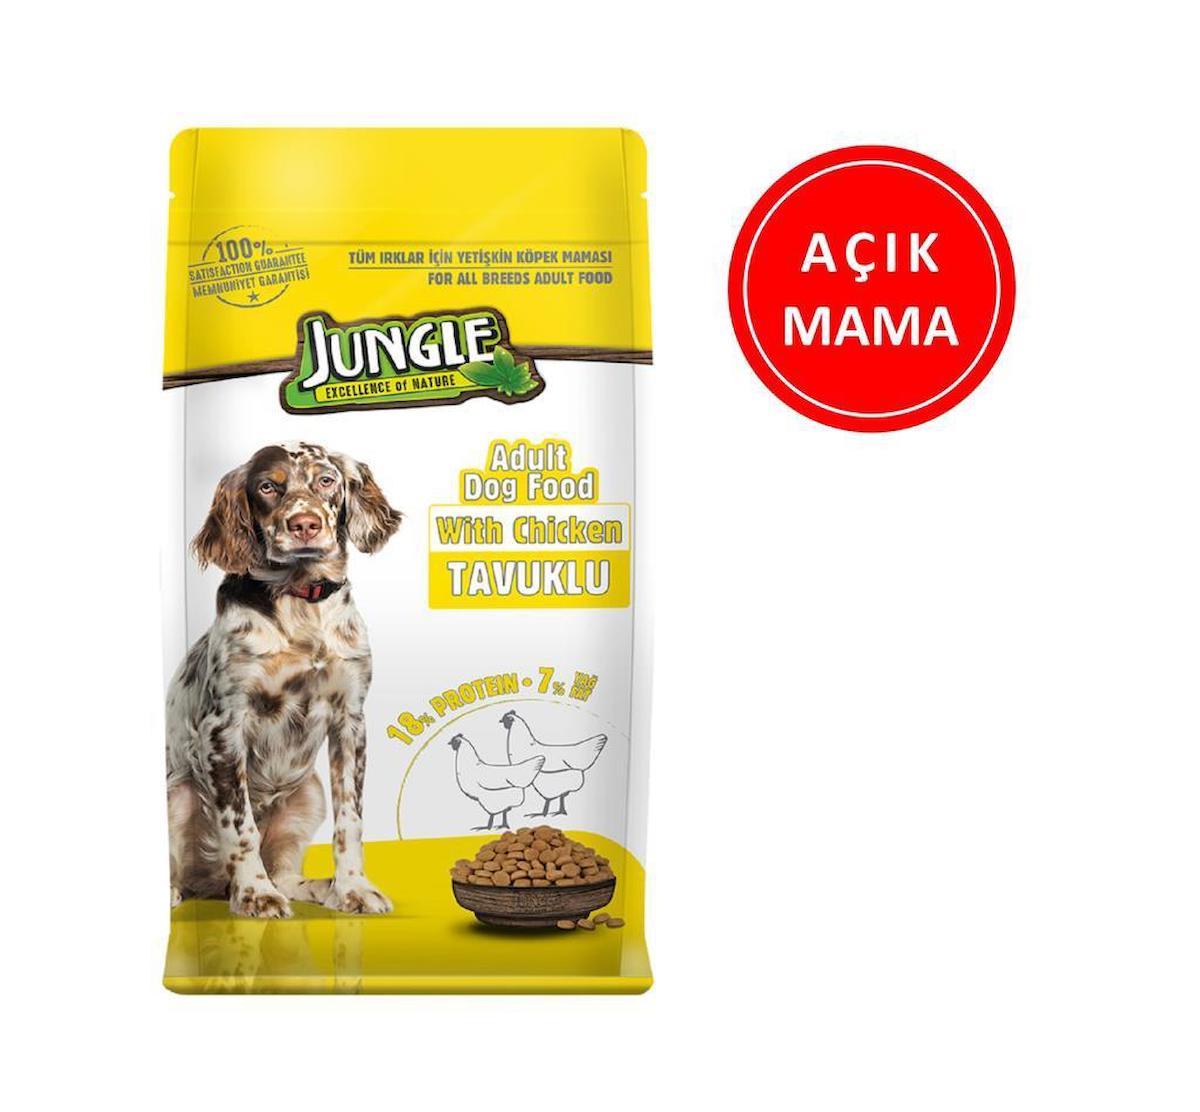 Jungle Tavuklu Tüm Irklar Yetişkin Kuru Köpek Maması 1 kg